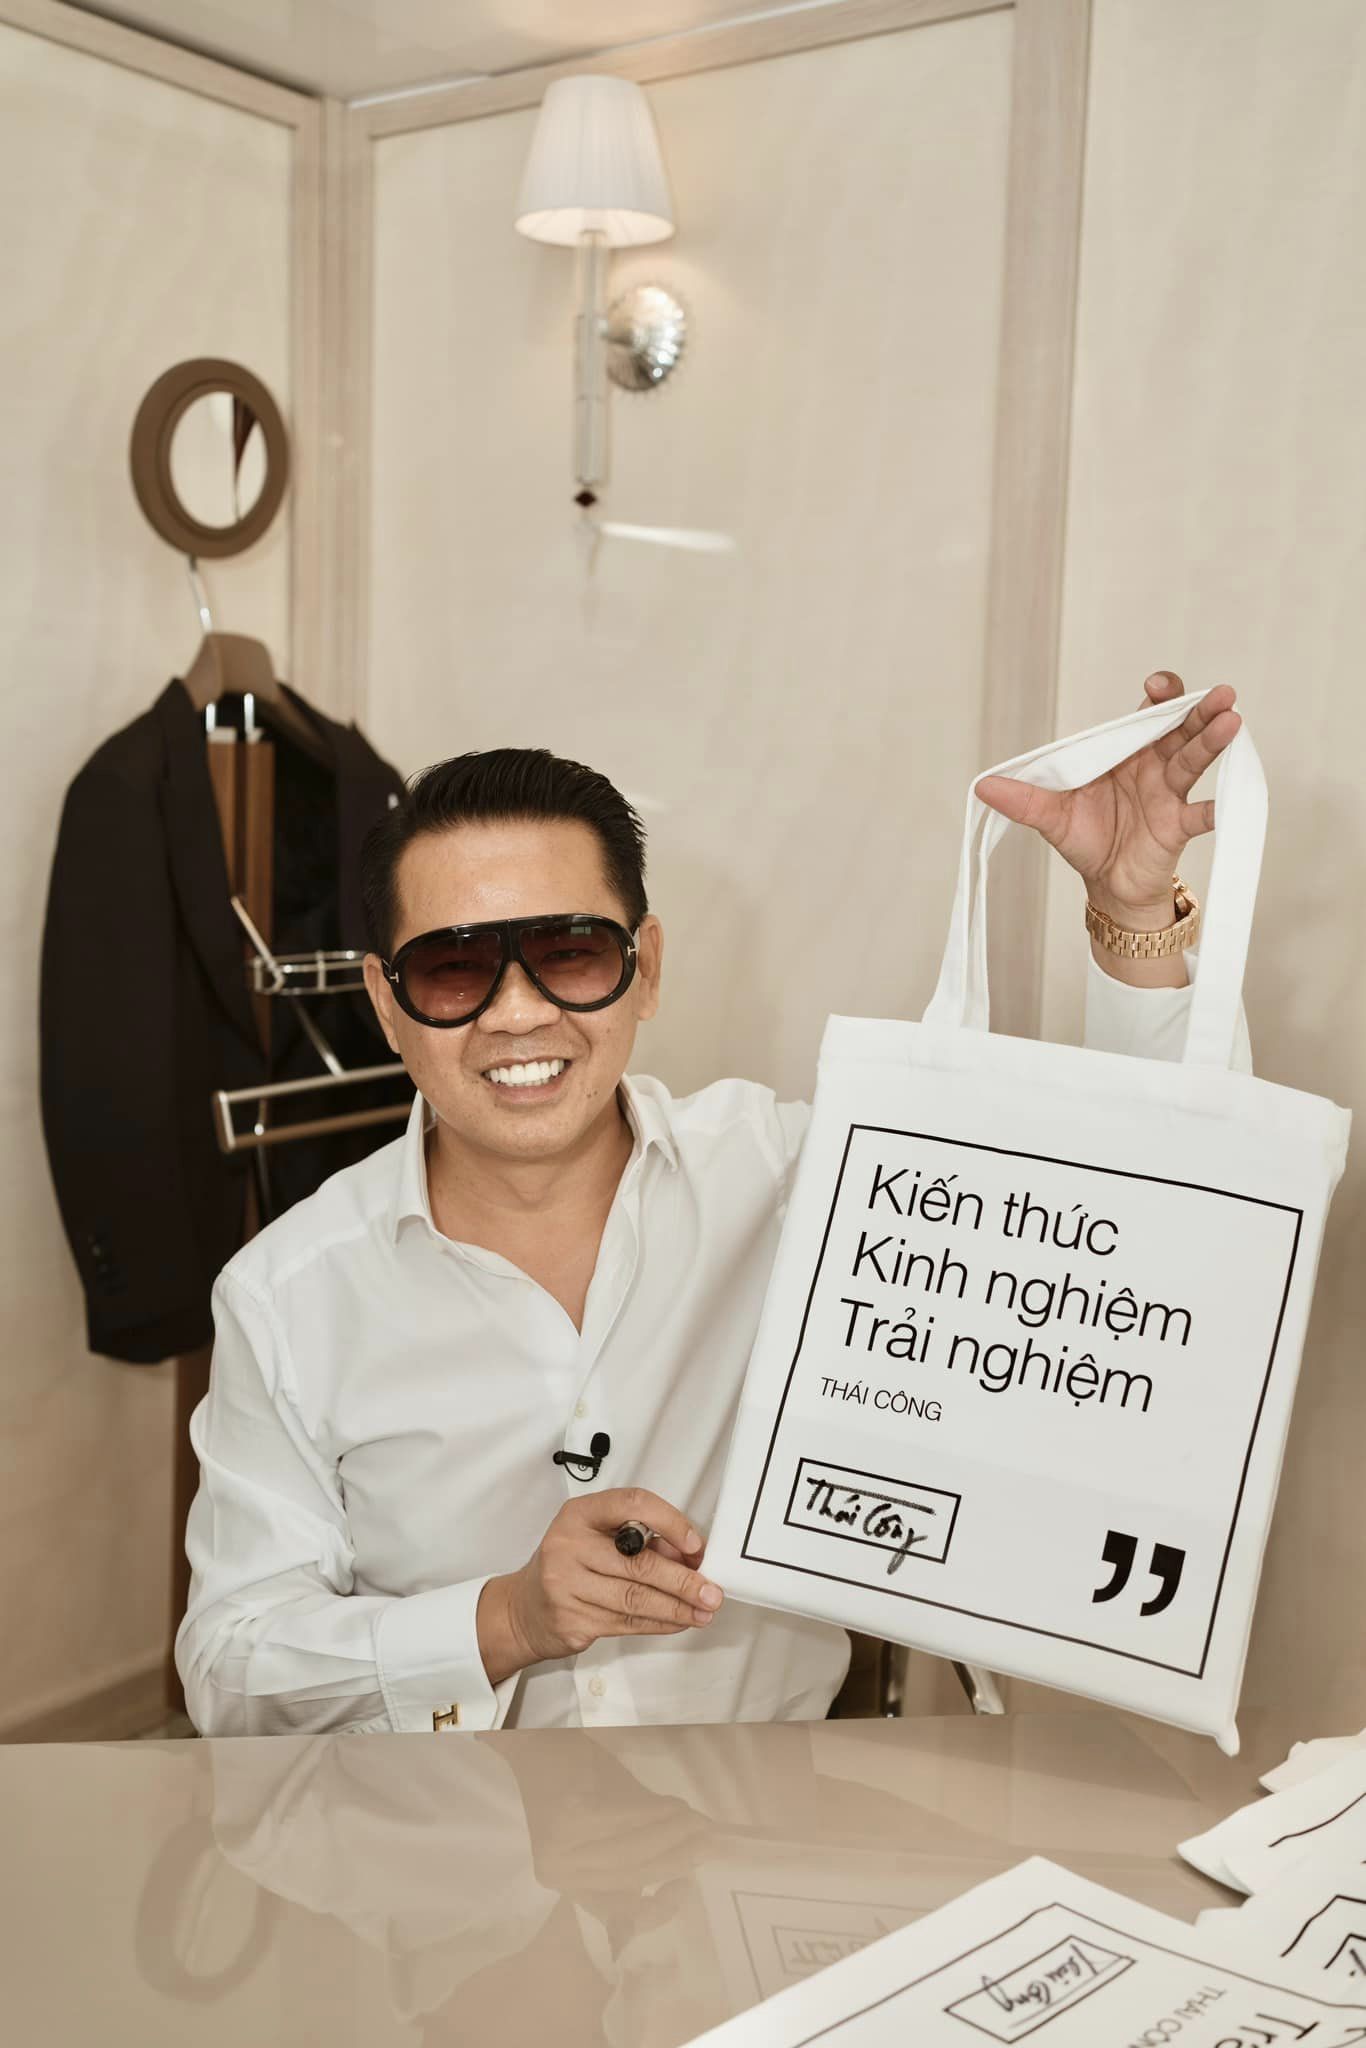 Thái Công và 'chiêu' bán hàng online: Tưởng trò cười hóa ra lại vô cùng thông minh - ảnh 5